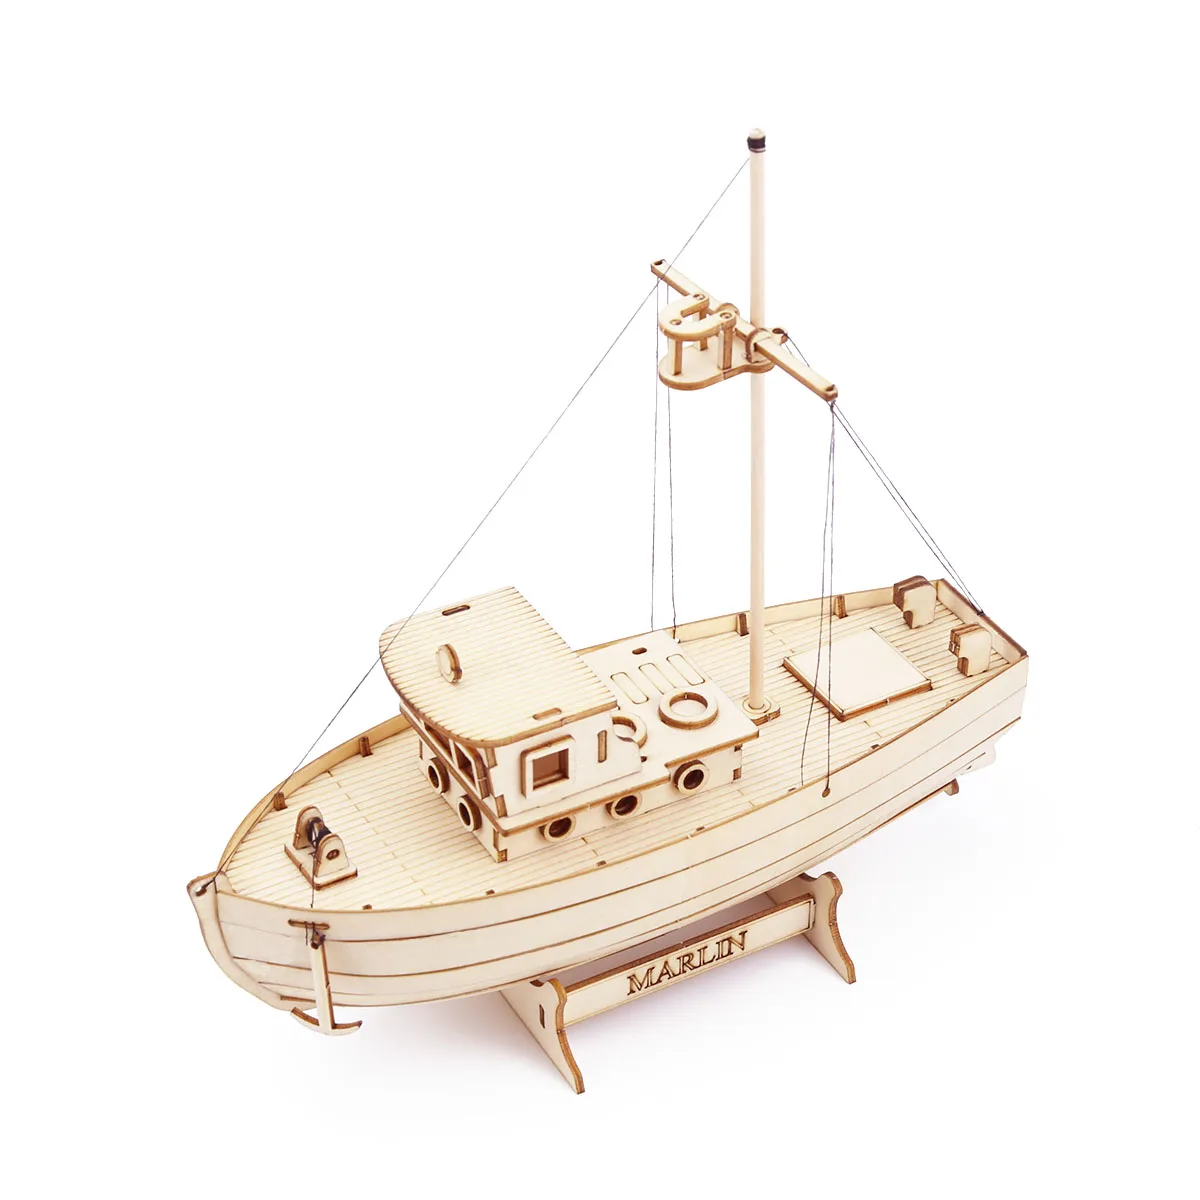 Niet genoeg uitvoeren Necklet Houten Schip Model Kit Zeilboot Vissersboot Building 3D Puzzel Montage Hout  Diy Mechanische Speelgoed Bureau Decoratie Voor Kids Volwassenen -  AliExpress Speelgoed & Hobbies